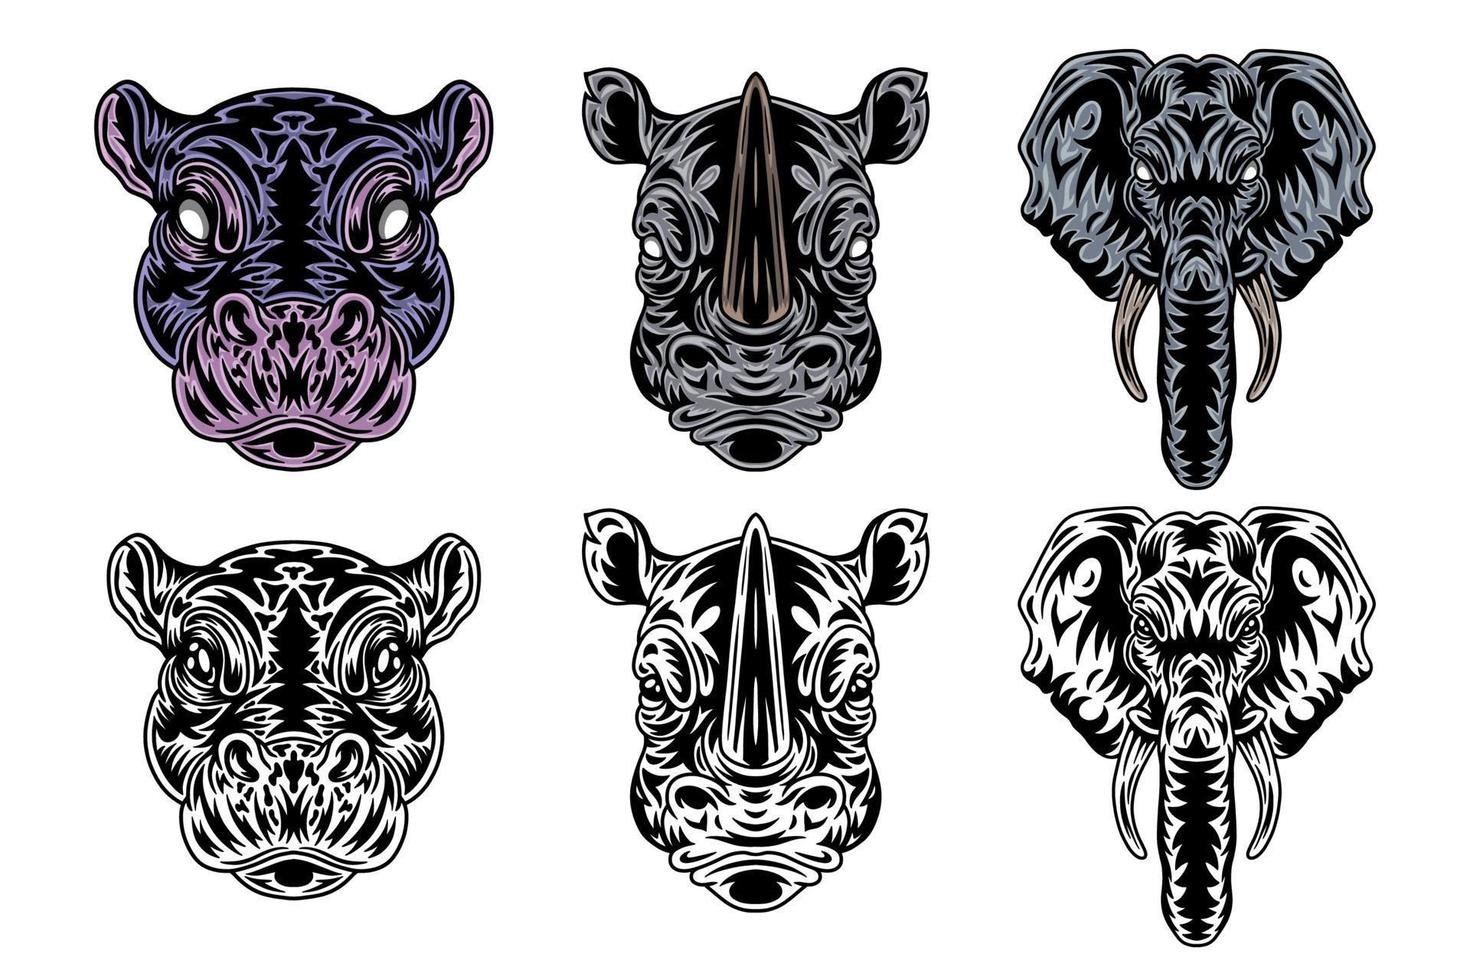 djur- ansikte flodhäst, noshörning, elefant årgång retro stylad. vektor illustration isolerat på vit bakgrund. design element.